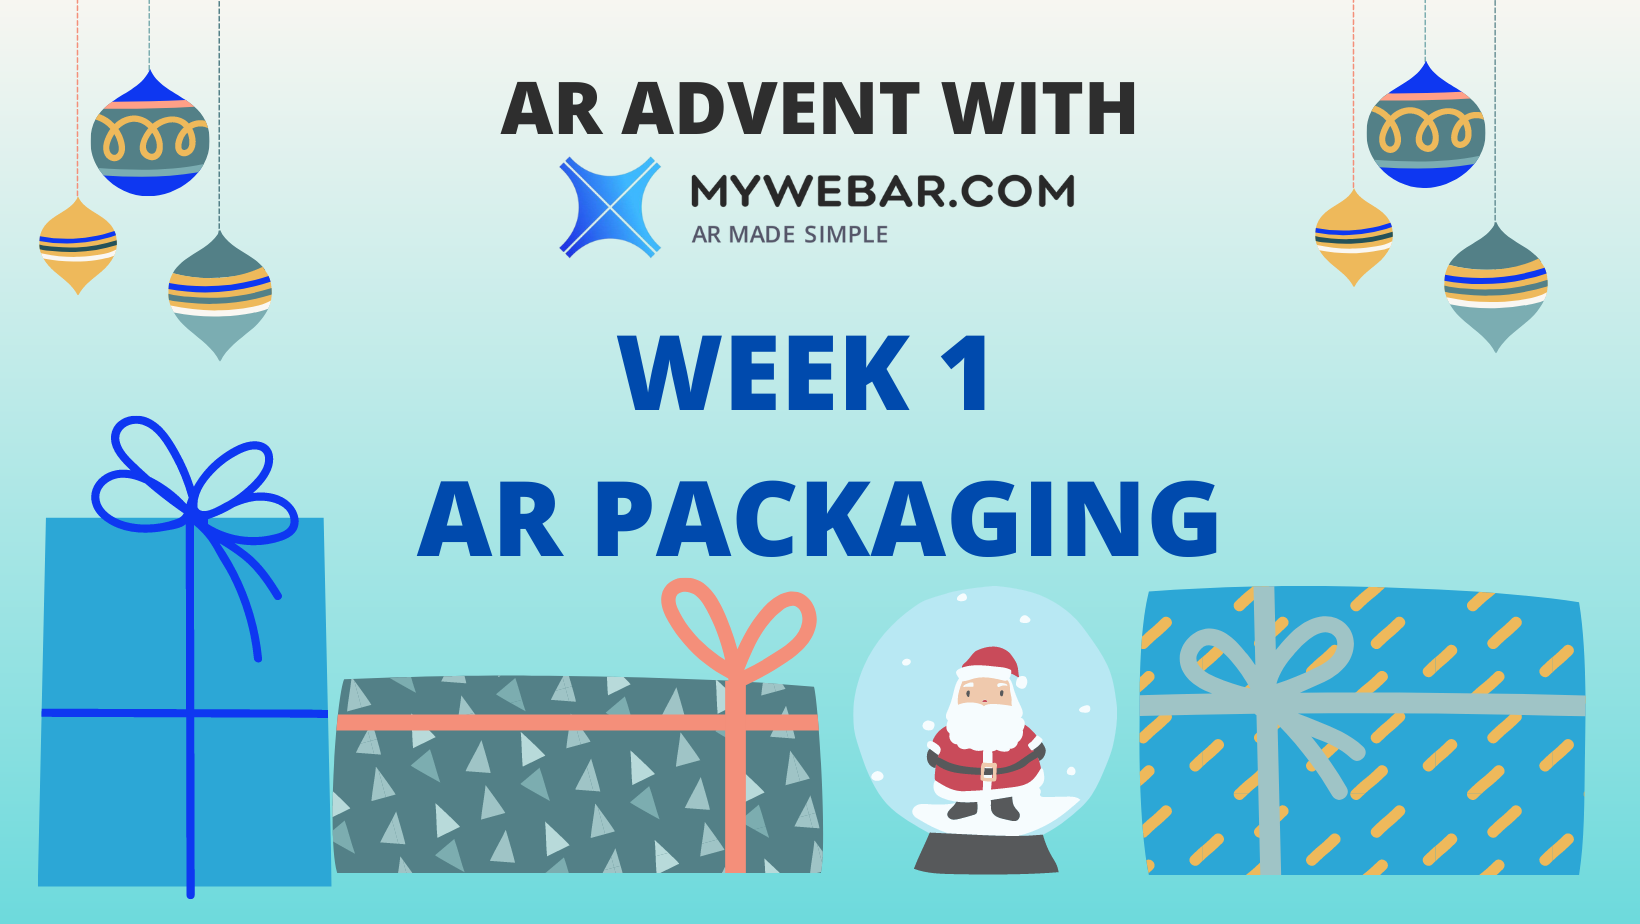 Primera semana de Adviento de AR con MyWebAR